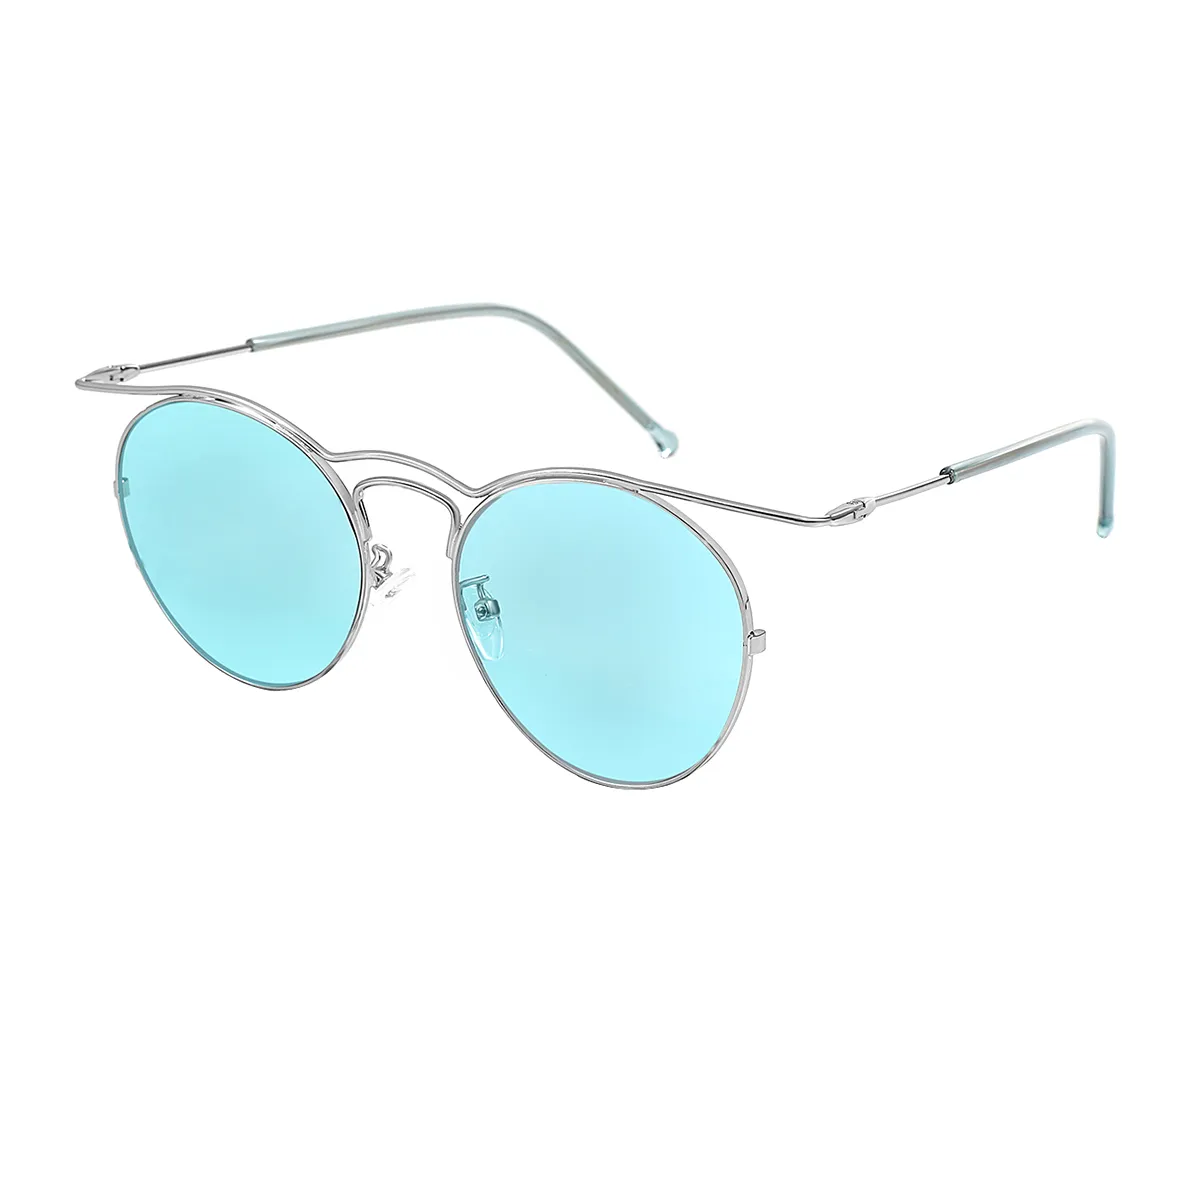 Inger - Aviator Silver Sunglasses for Women